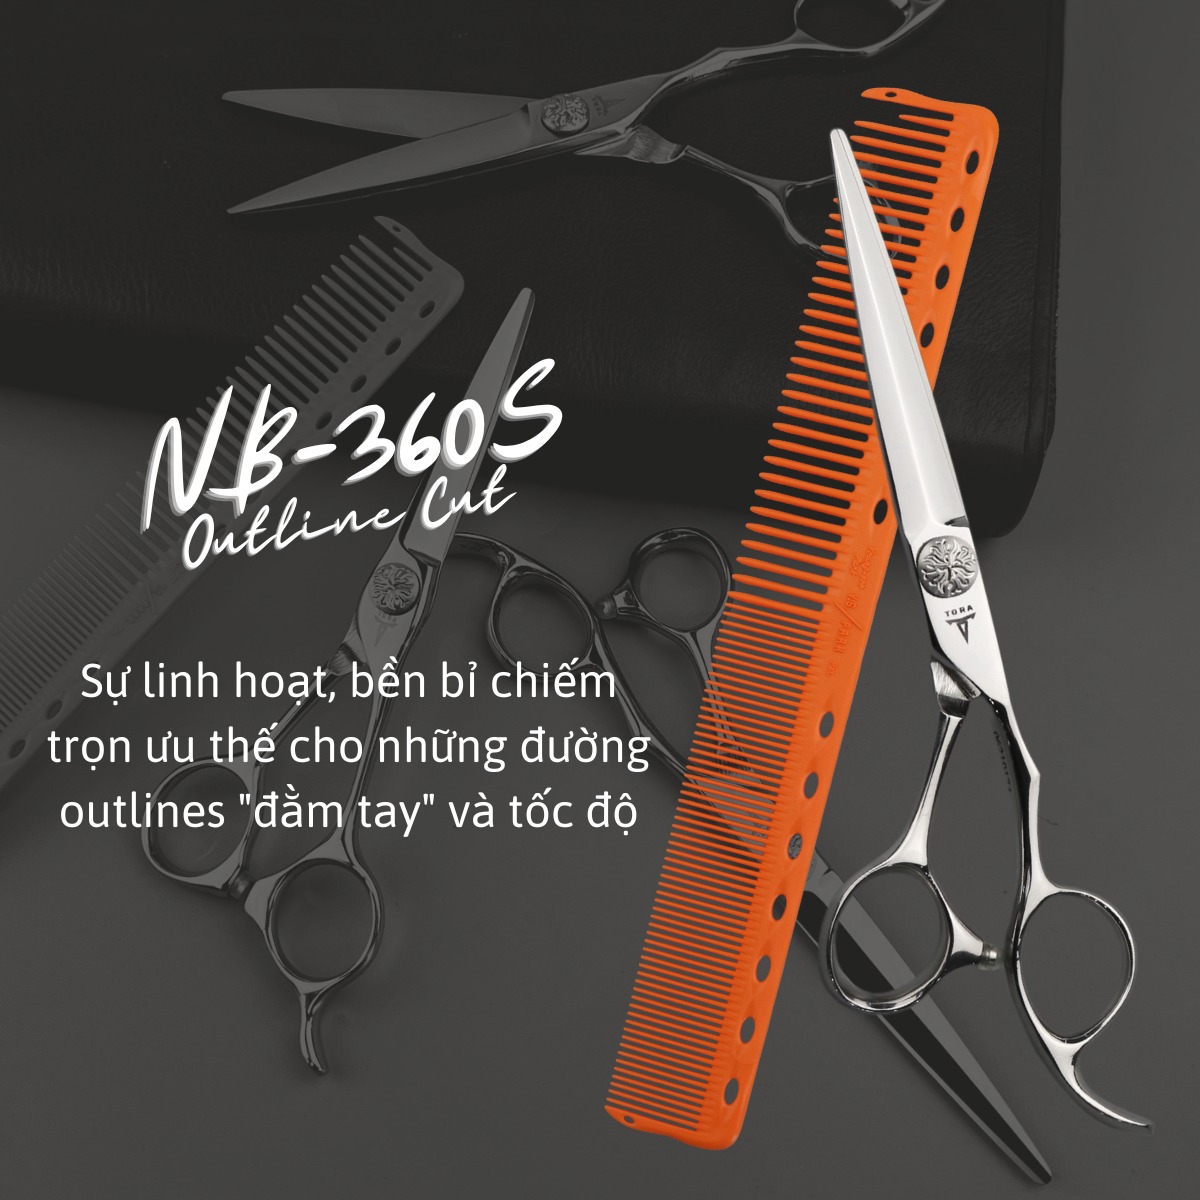 Kéo cắt tóc NB-360S sắc bén